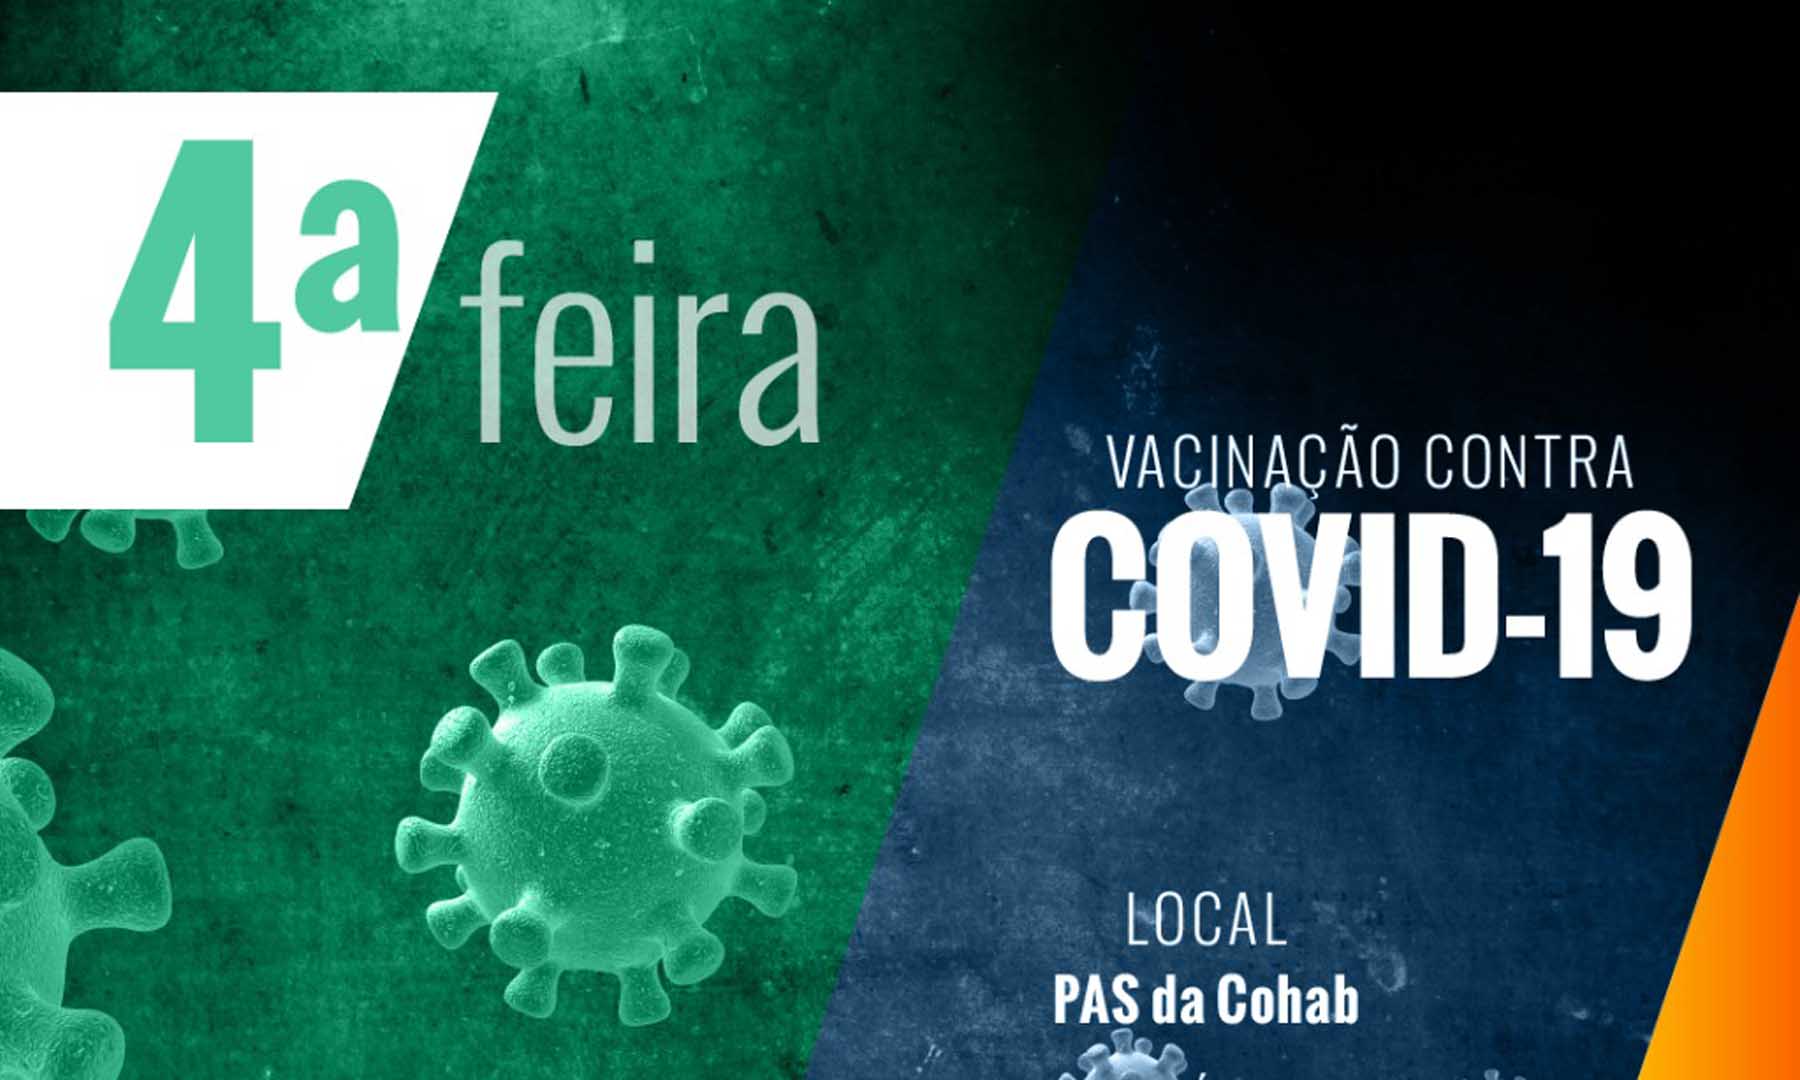 VACINAÇÃO COVID-19 - DIA 01 DE MARÇO